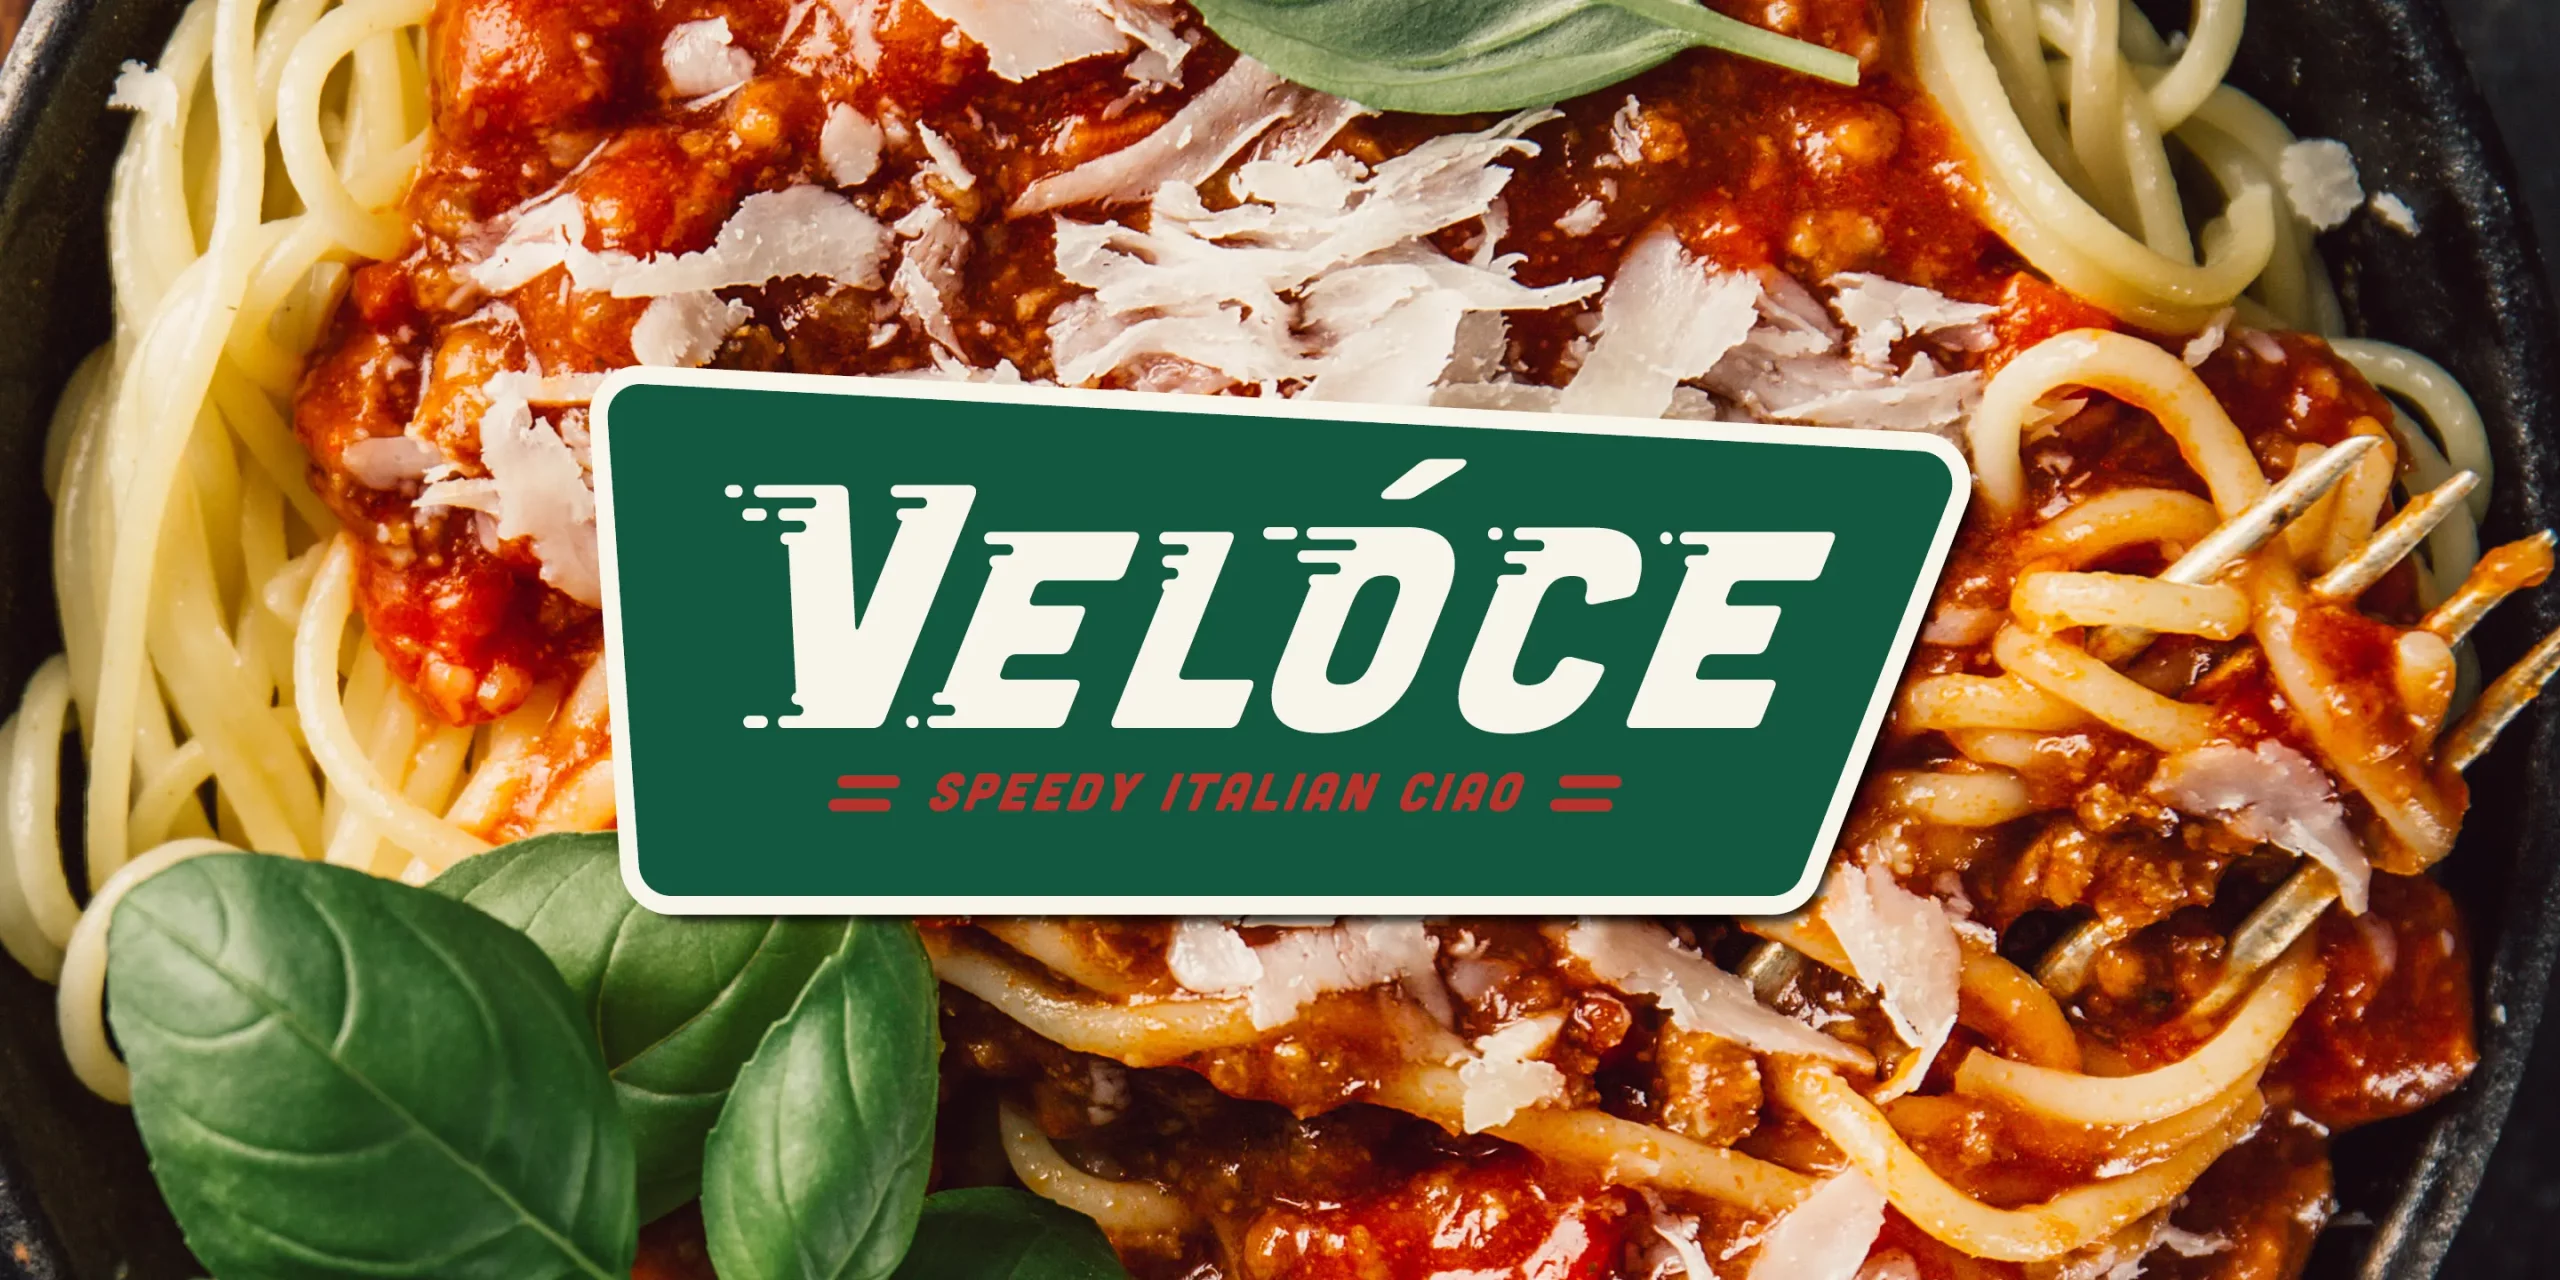 Velόce, Italian Restaurant Branding, Primary Logo